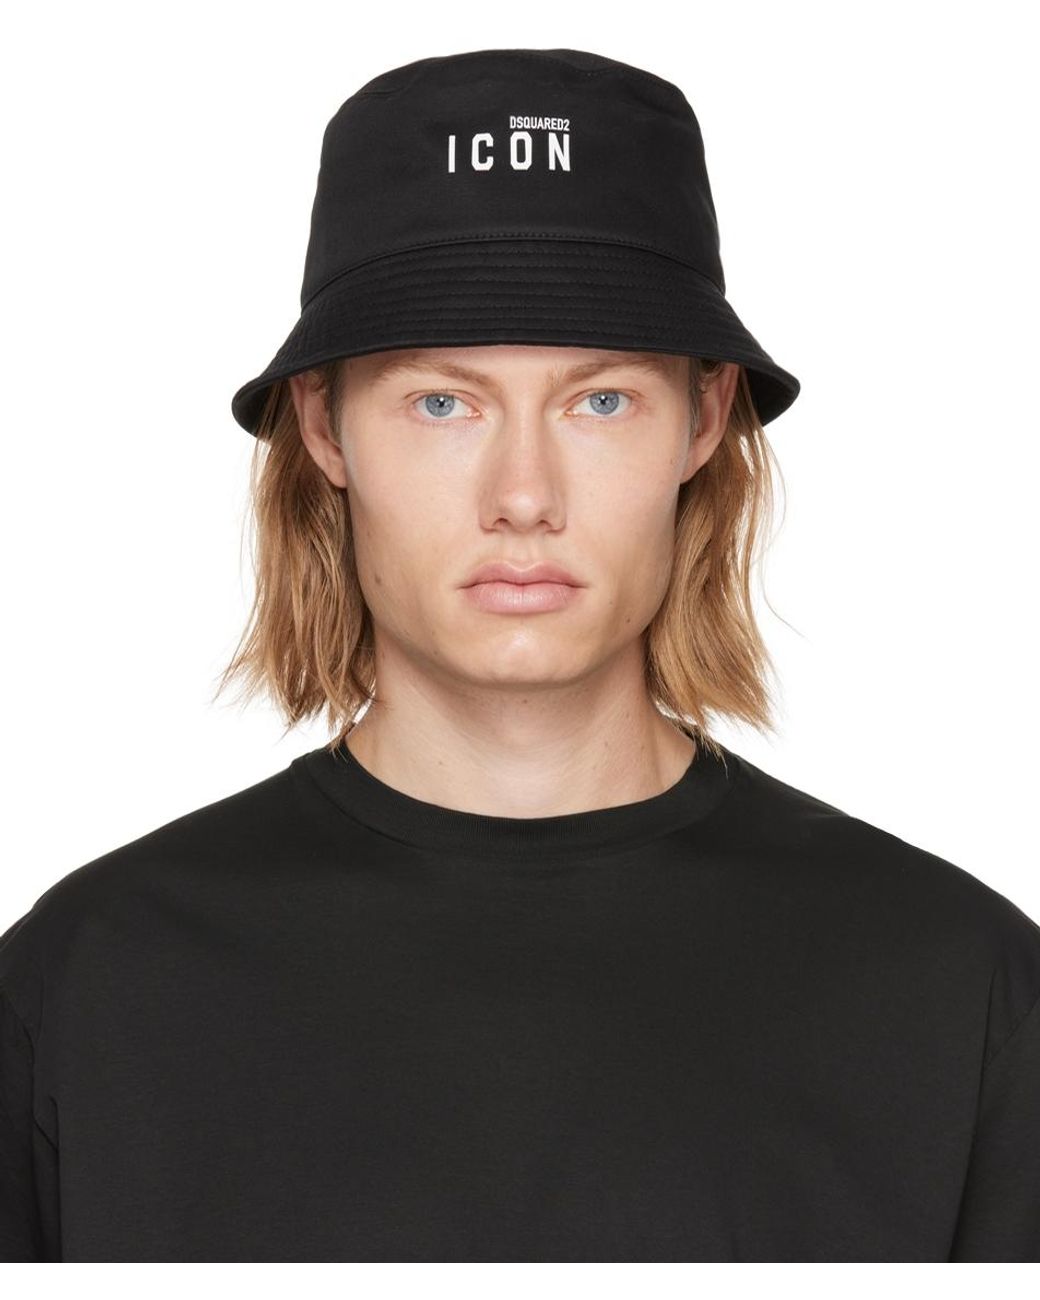 Casquette En Toile De Coton icon Coton DSquared² pour homme en coloris Noir Homme Chapeaux Chapeaux DSquared² 